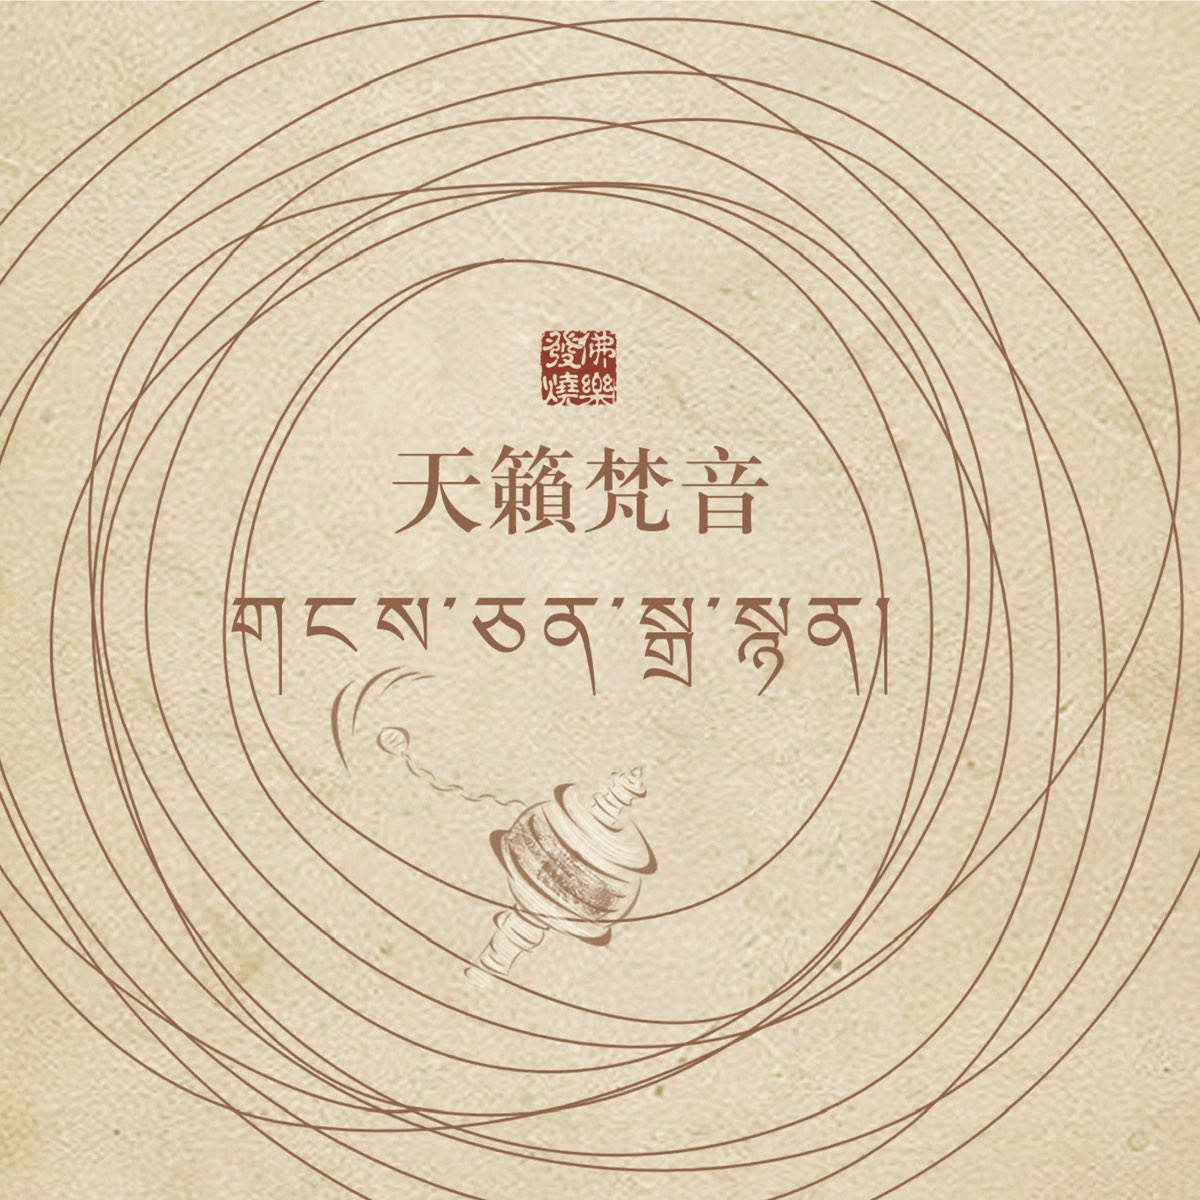 清平乐(《长安十二时辰》主题推广曲) - 如墨【天籁梵音】 - 5SING中国原创音乐基地